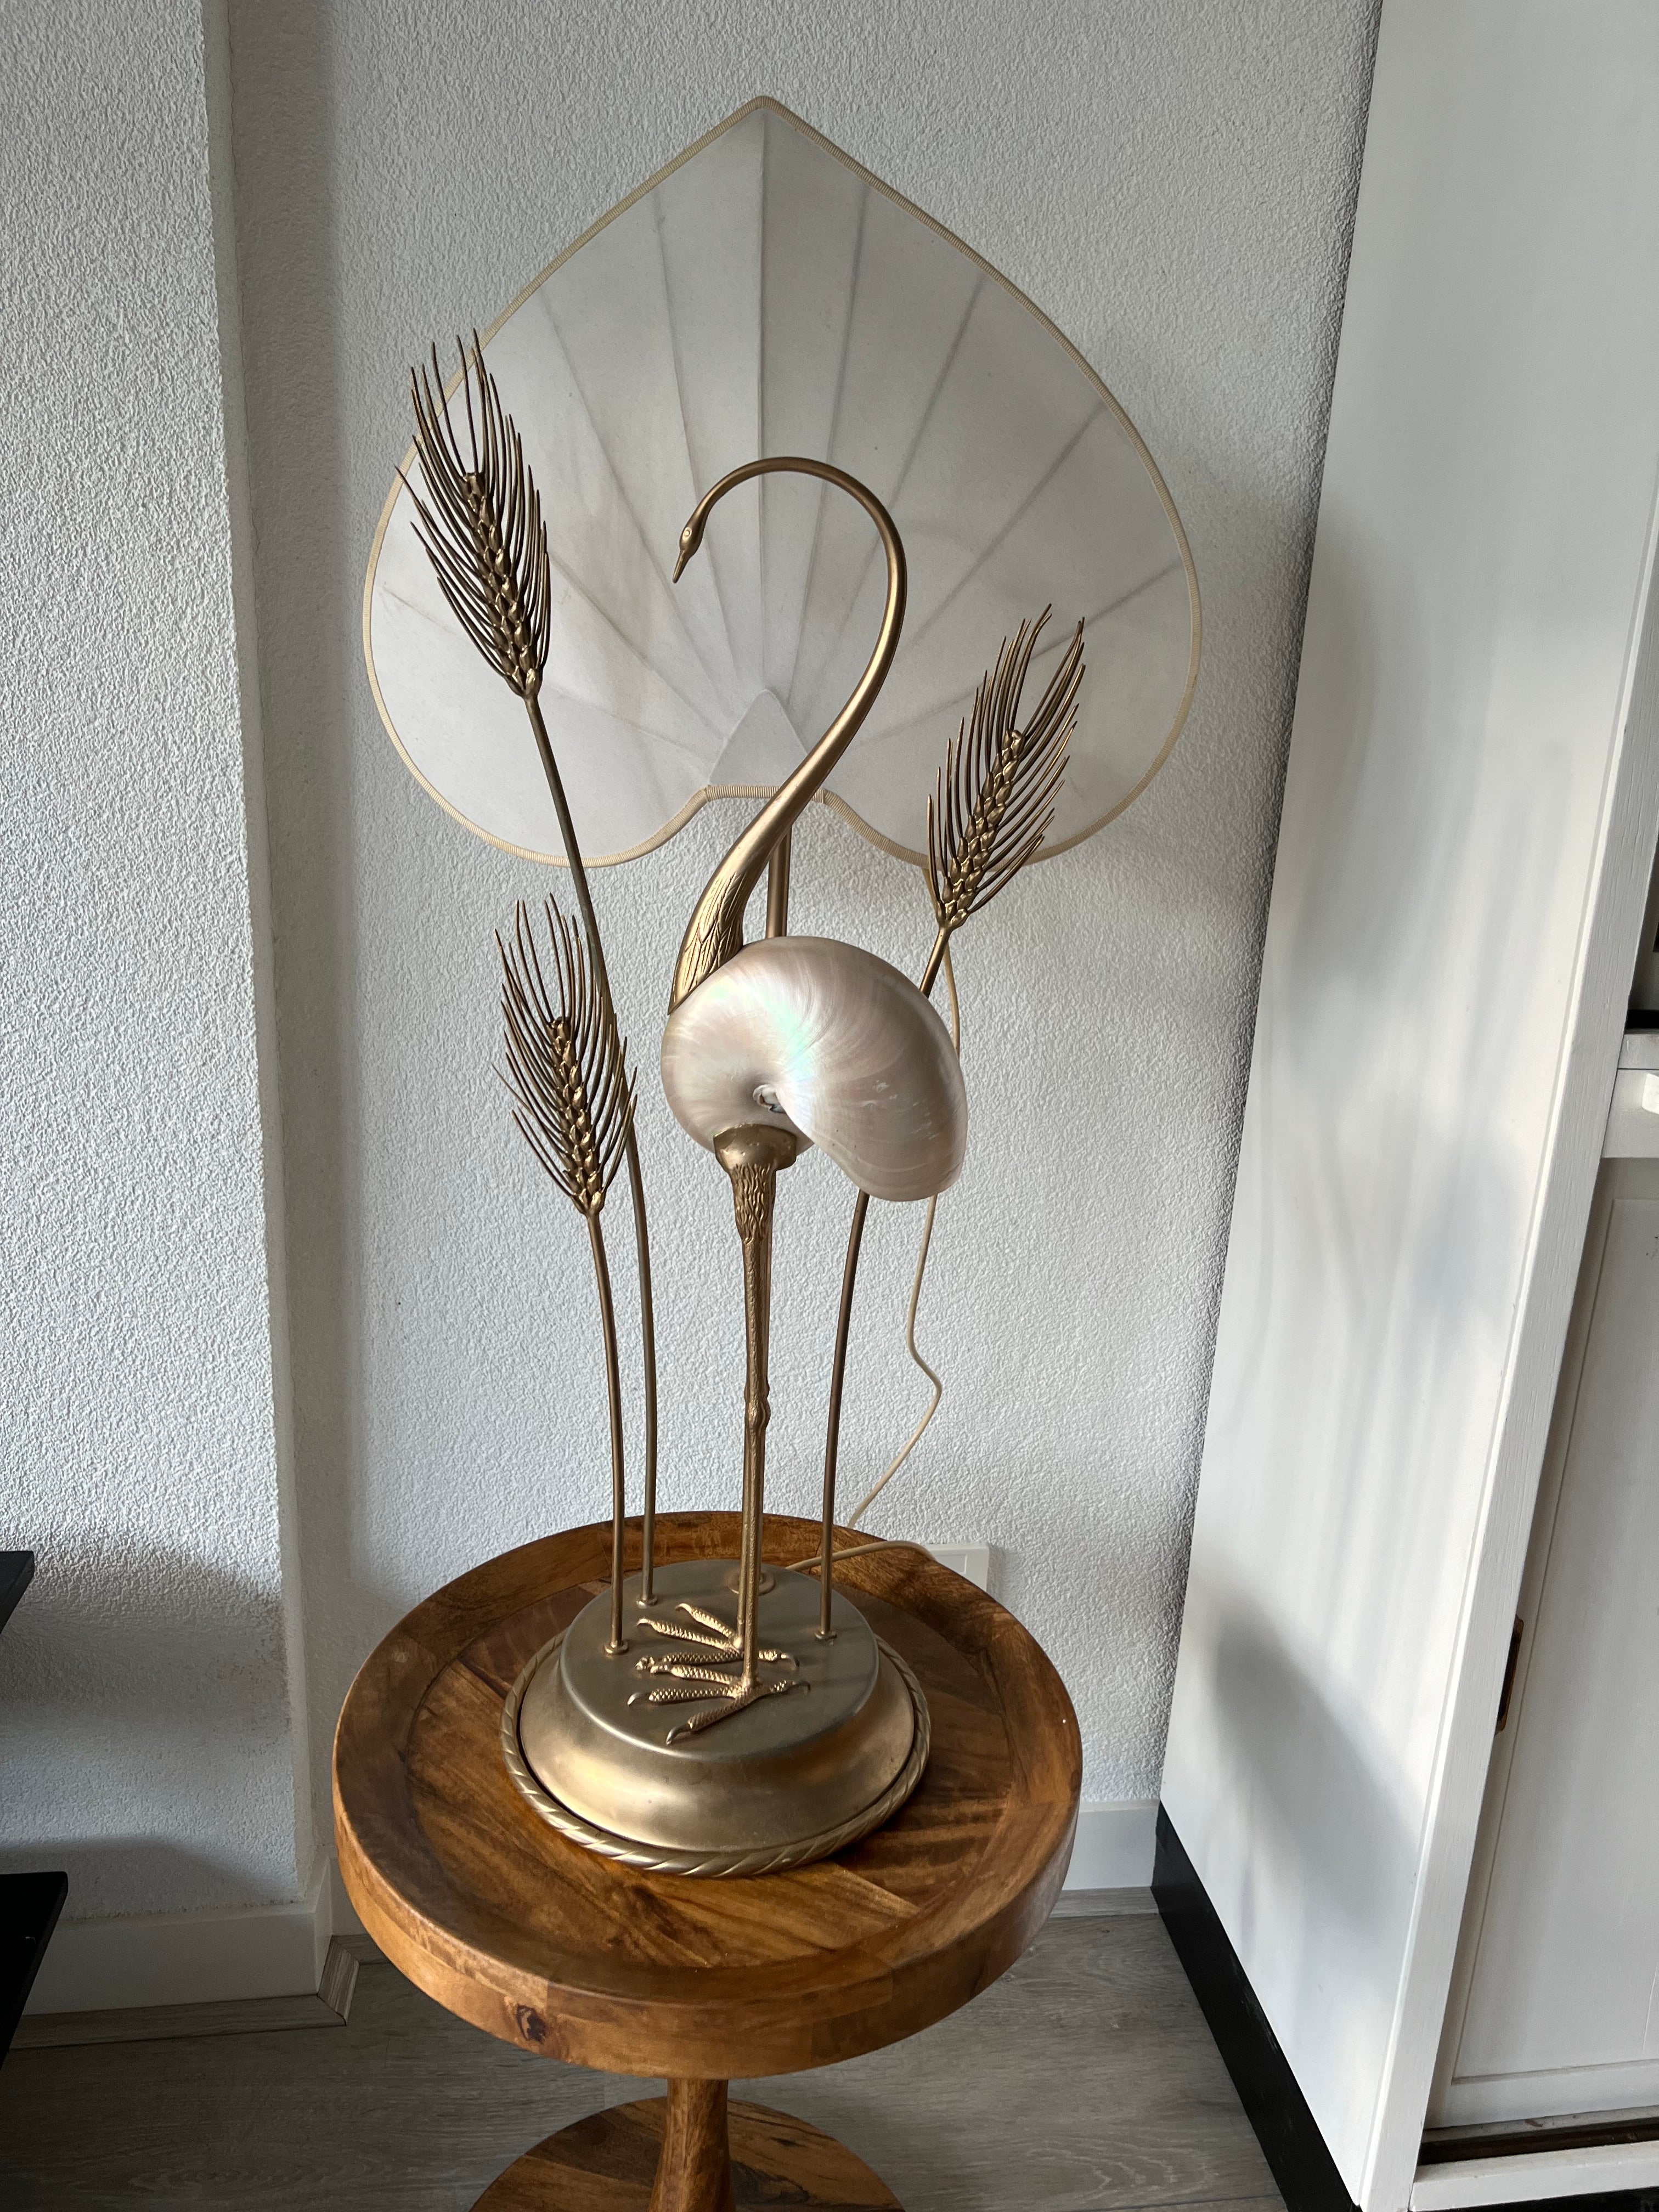 Hervorragender skulpturaler Vogellampentisch von Antonio Pavia, italienischer Designer.

Diese unglaublich gut gestaltete und perfekt ausgeführte Tischlampe von Antonio Pavia aus Italien hat großen dekorativen Wert. Diese seltene Lampe mit der